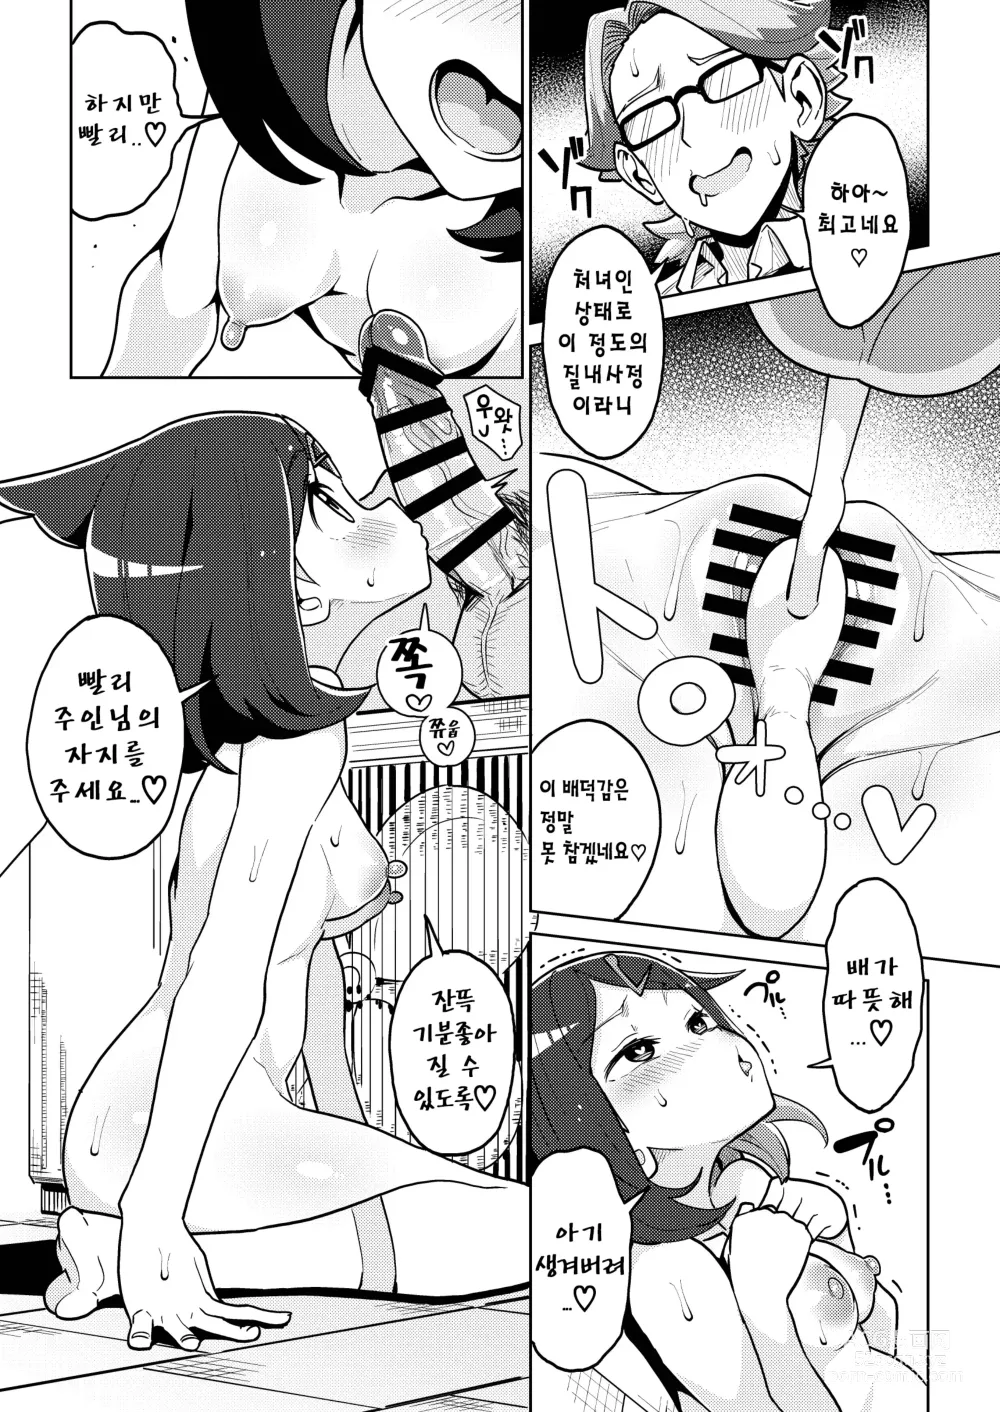 Page 13 of doujinshi 사이코파워라는건 대체 뭐죠?